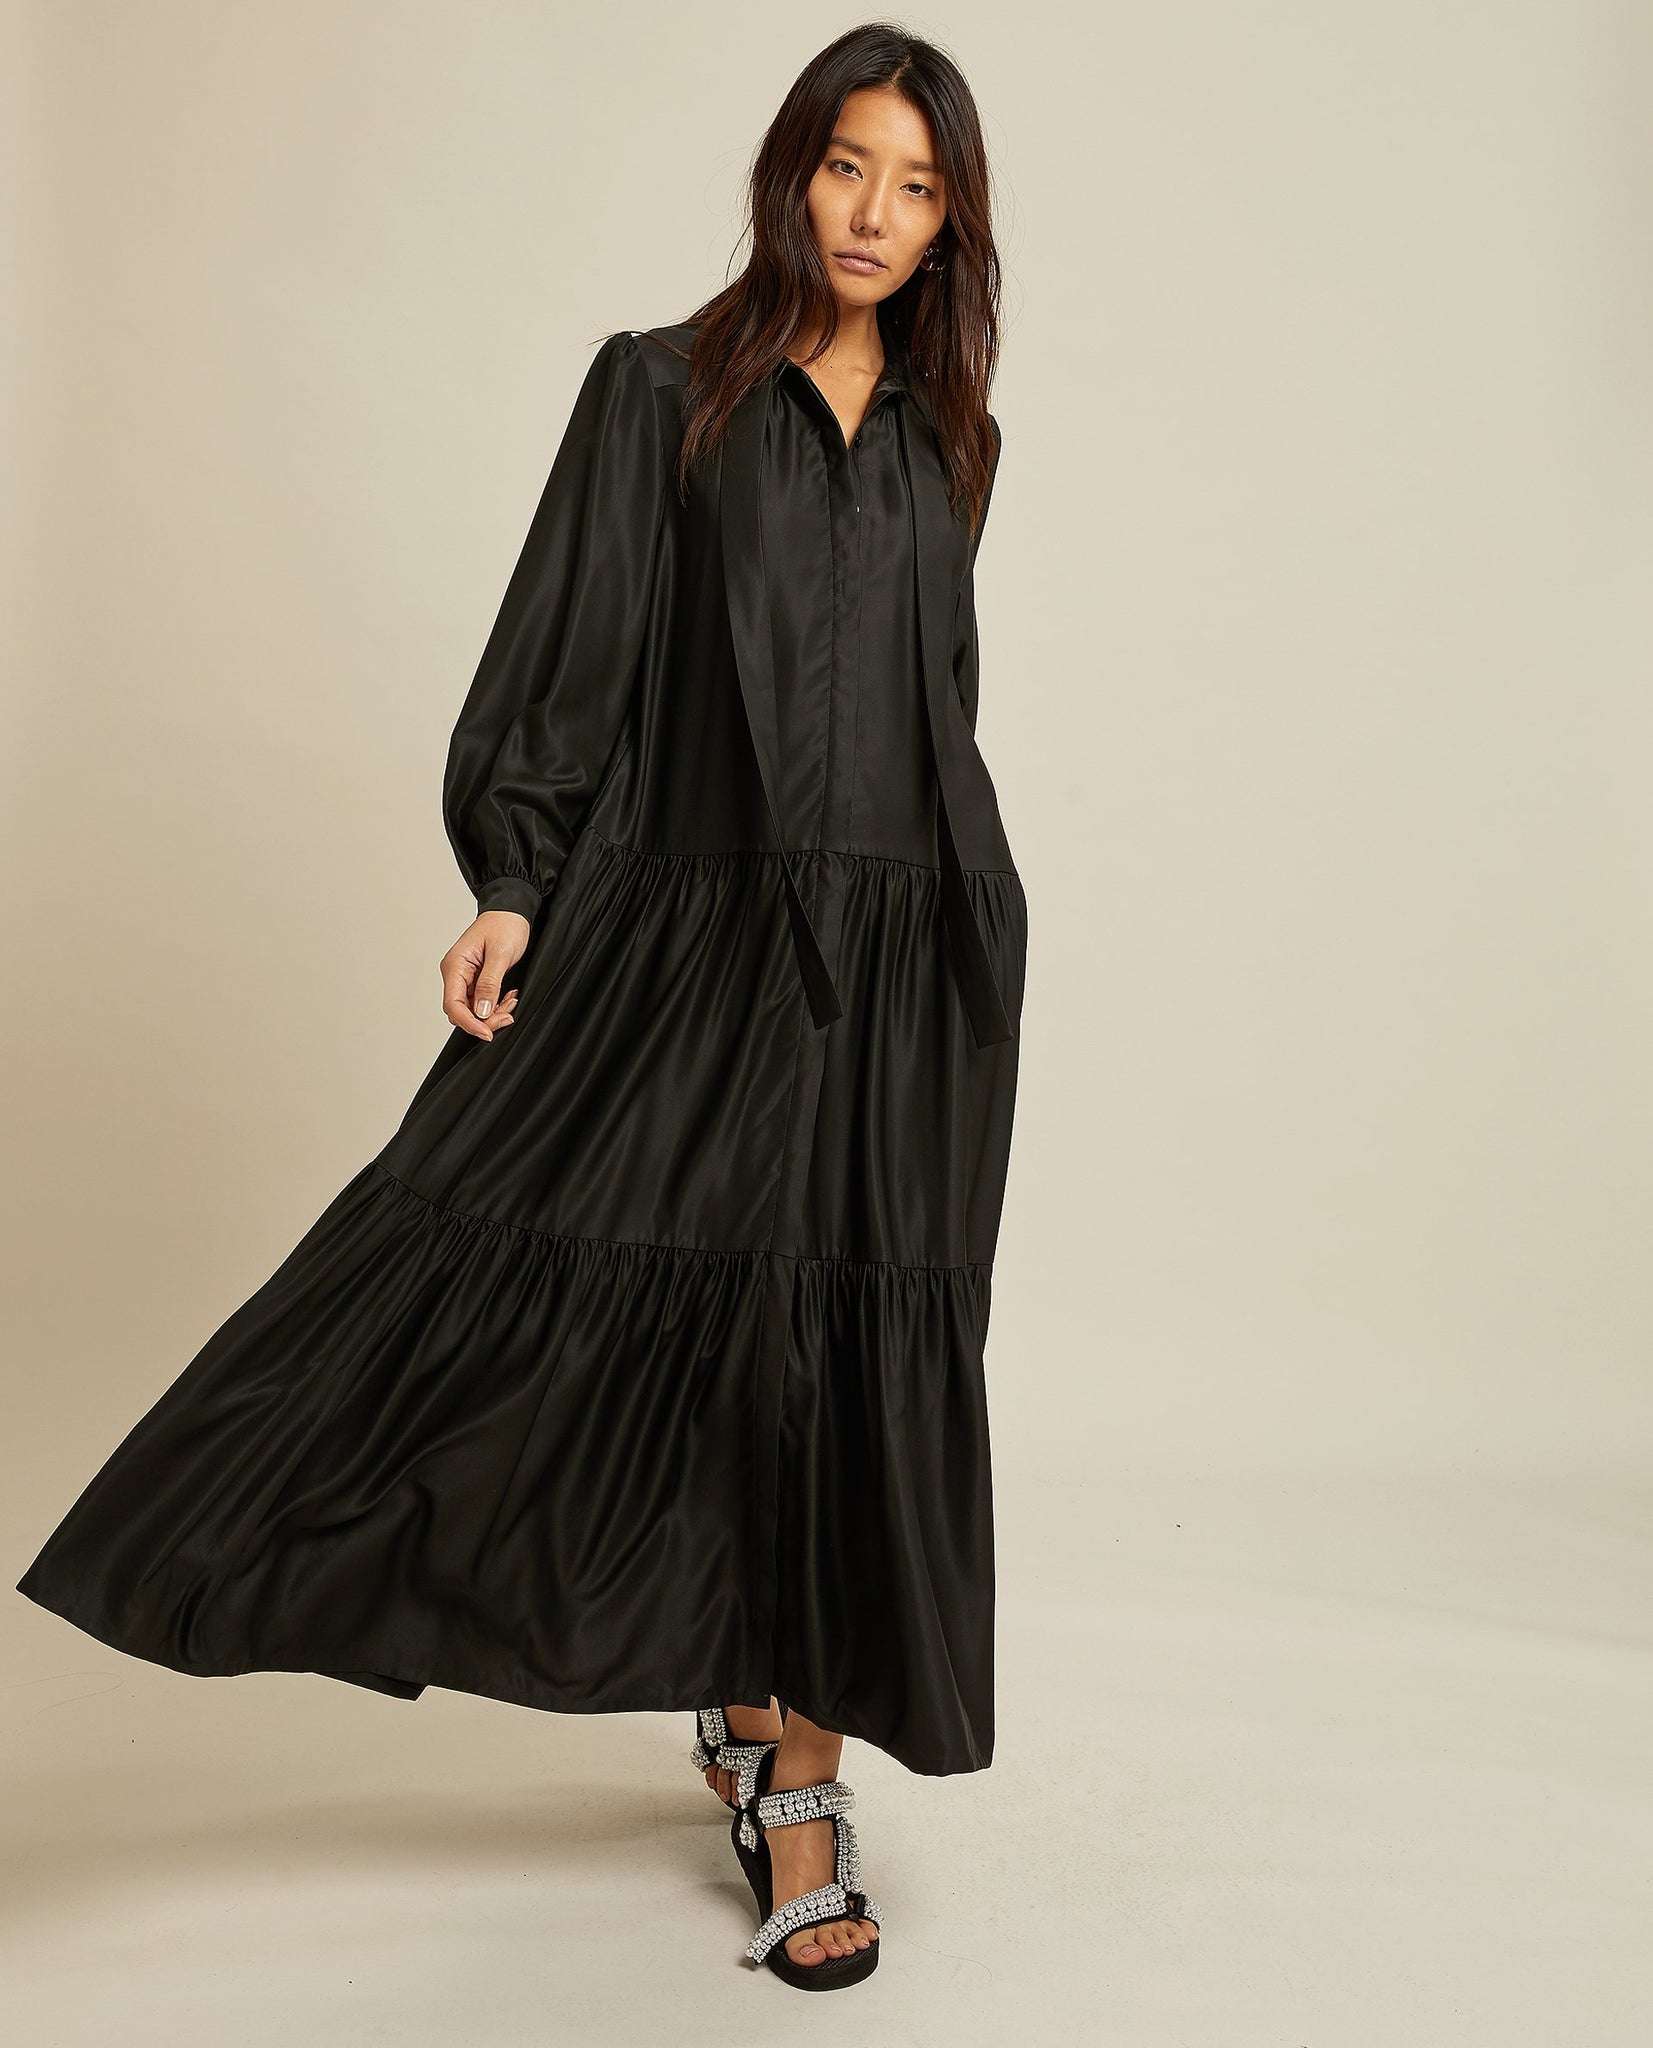 PINA DRESS BLACK BY LES COYOTES DE PARIS - BEYOND STUDIOS